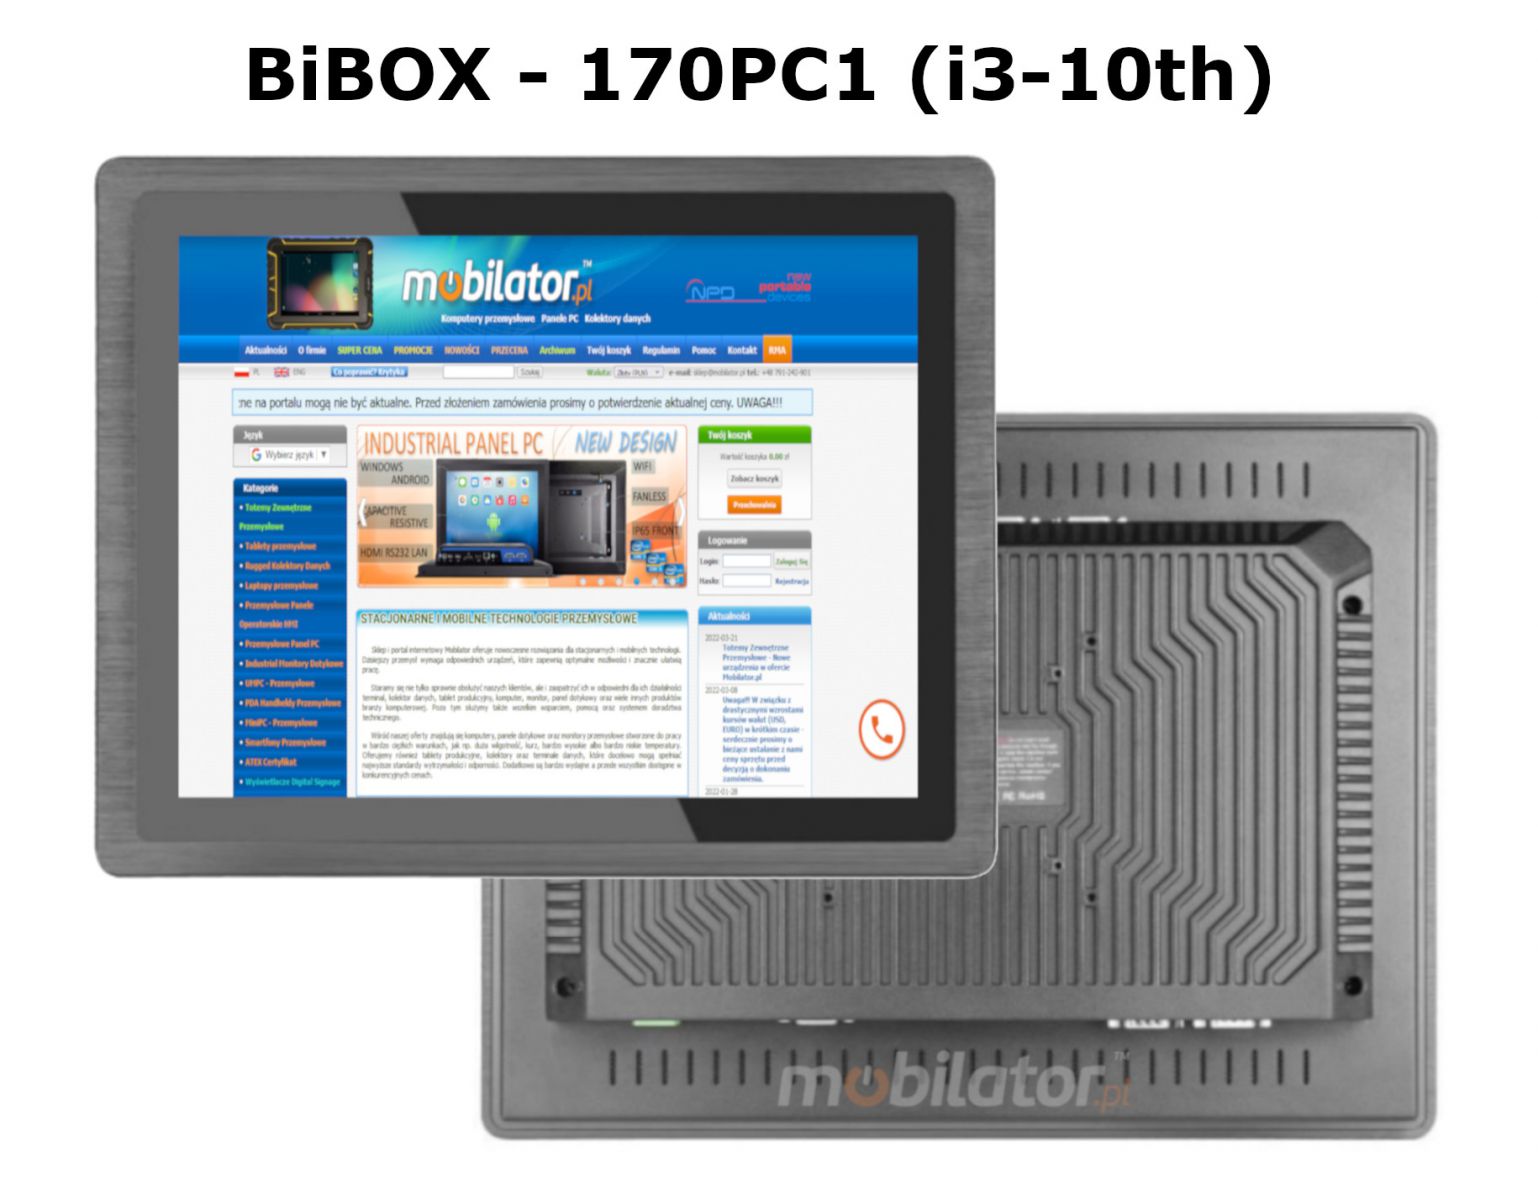 BIBOX-170PC1 odporny dobry wydajny komputer panelowy